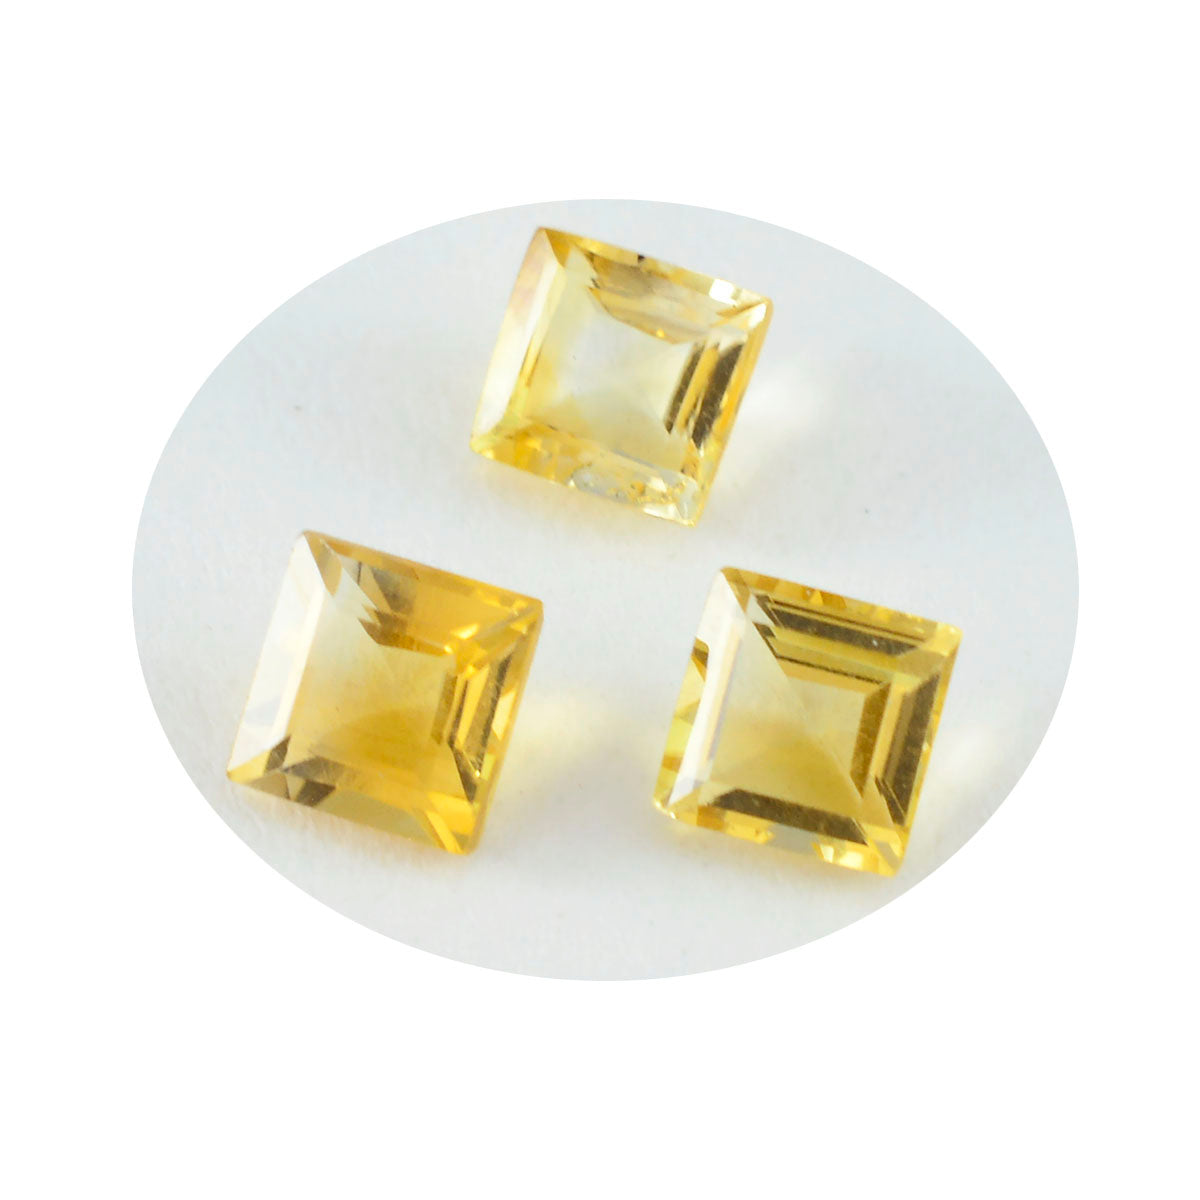 Riyogems 1 Stück echter gelber Citrin, facettiert, 8 x 8 mm, quadratische Form, hübsche, hochwertige, lose Edelsteine